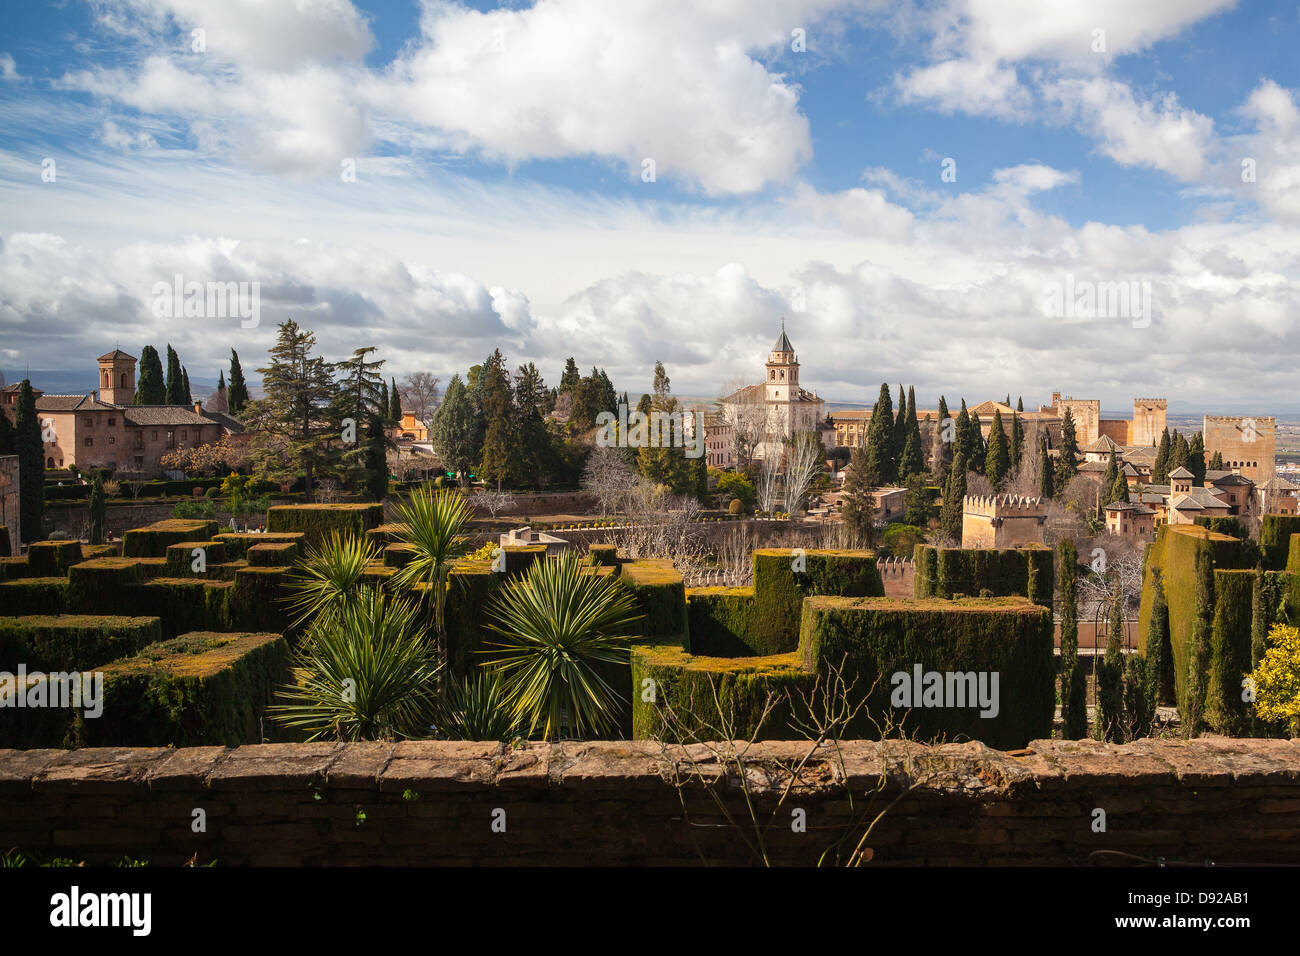 Gardens of La Alhambra in Granada, Spain Stock Photo